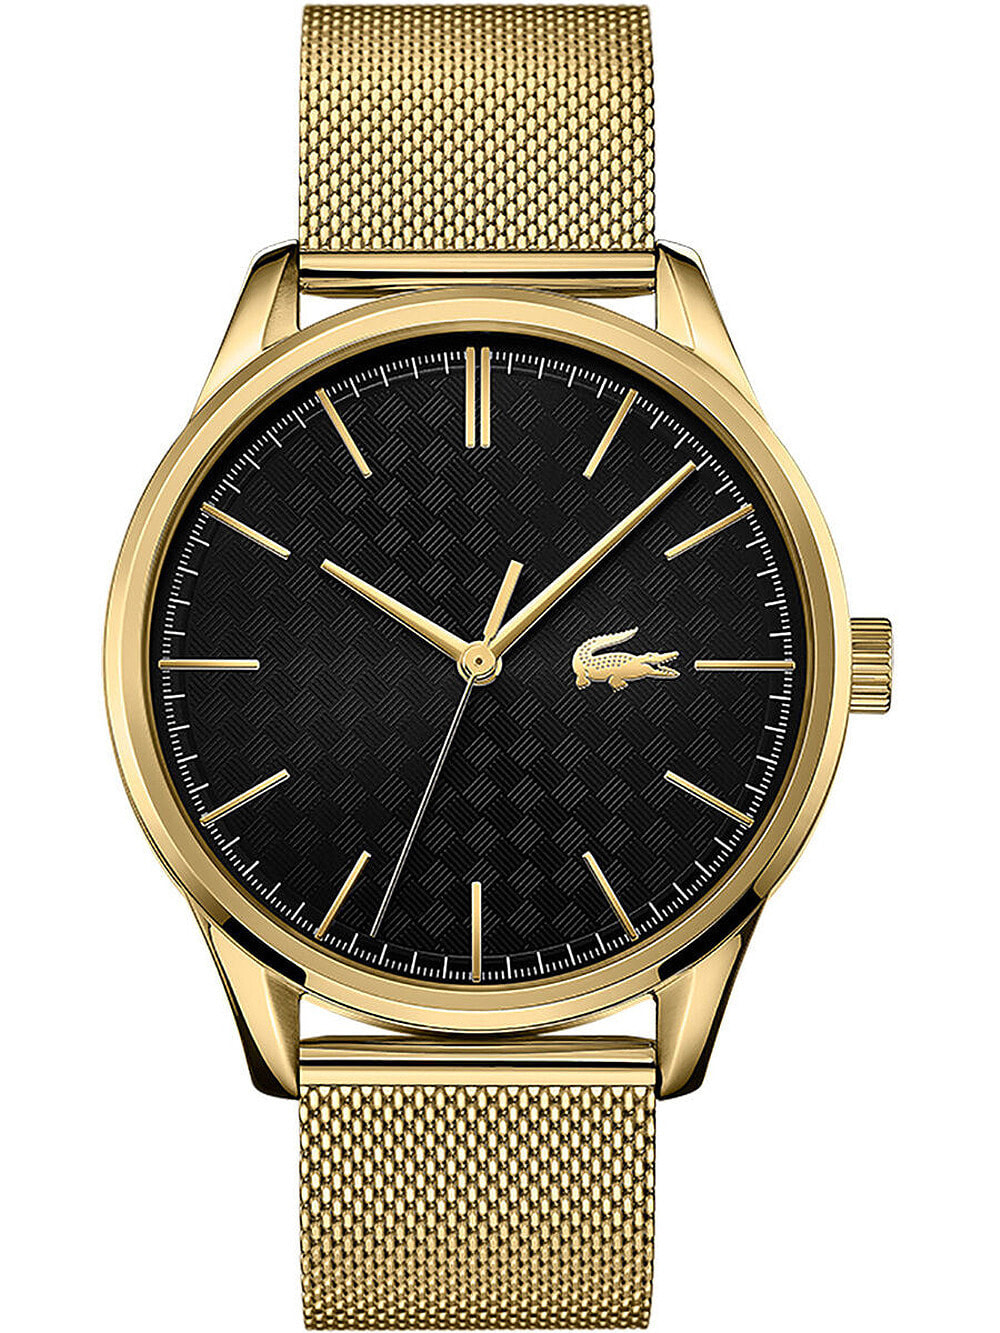 Мужские наручные часы с золотым браслетом Lacoste 2011104 Vienna mens 42mm 5ATM